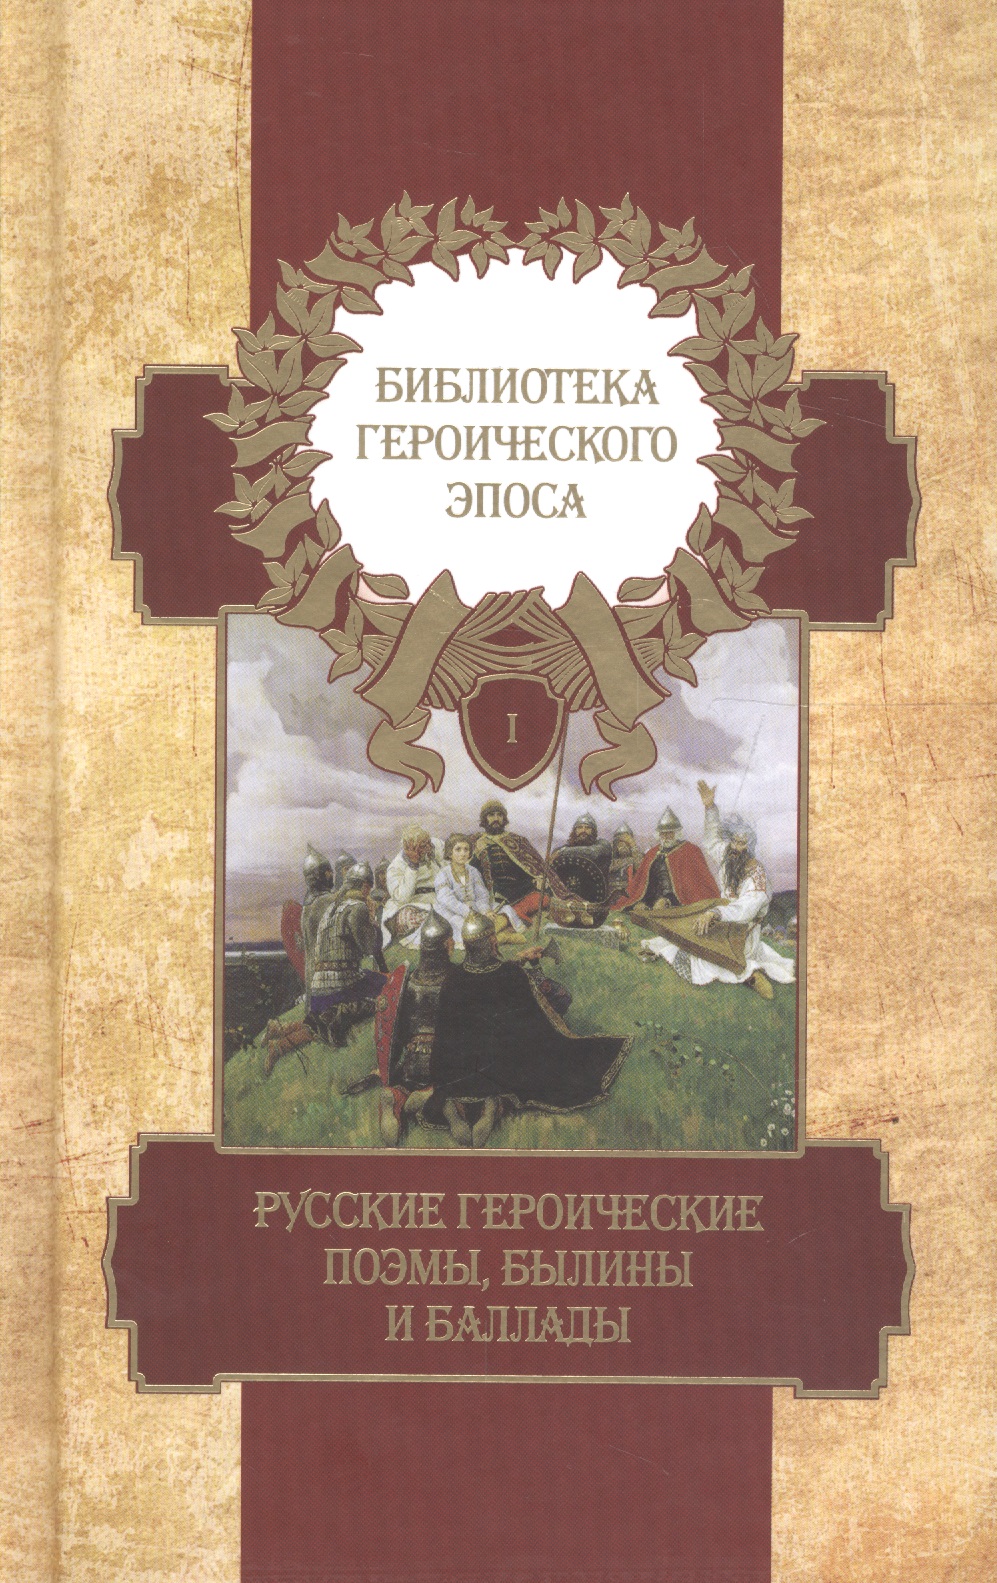 Библиотека героического эпоса. Том 1. Русские героические поэмы, былины и баллады